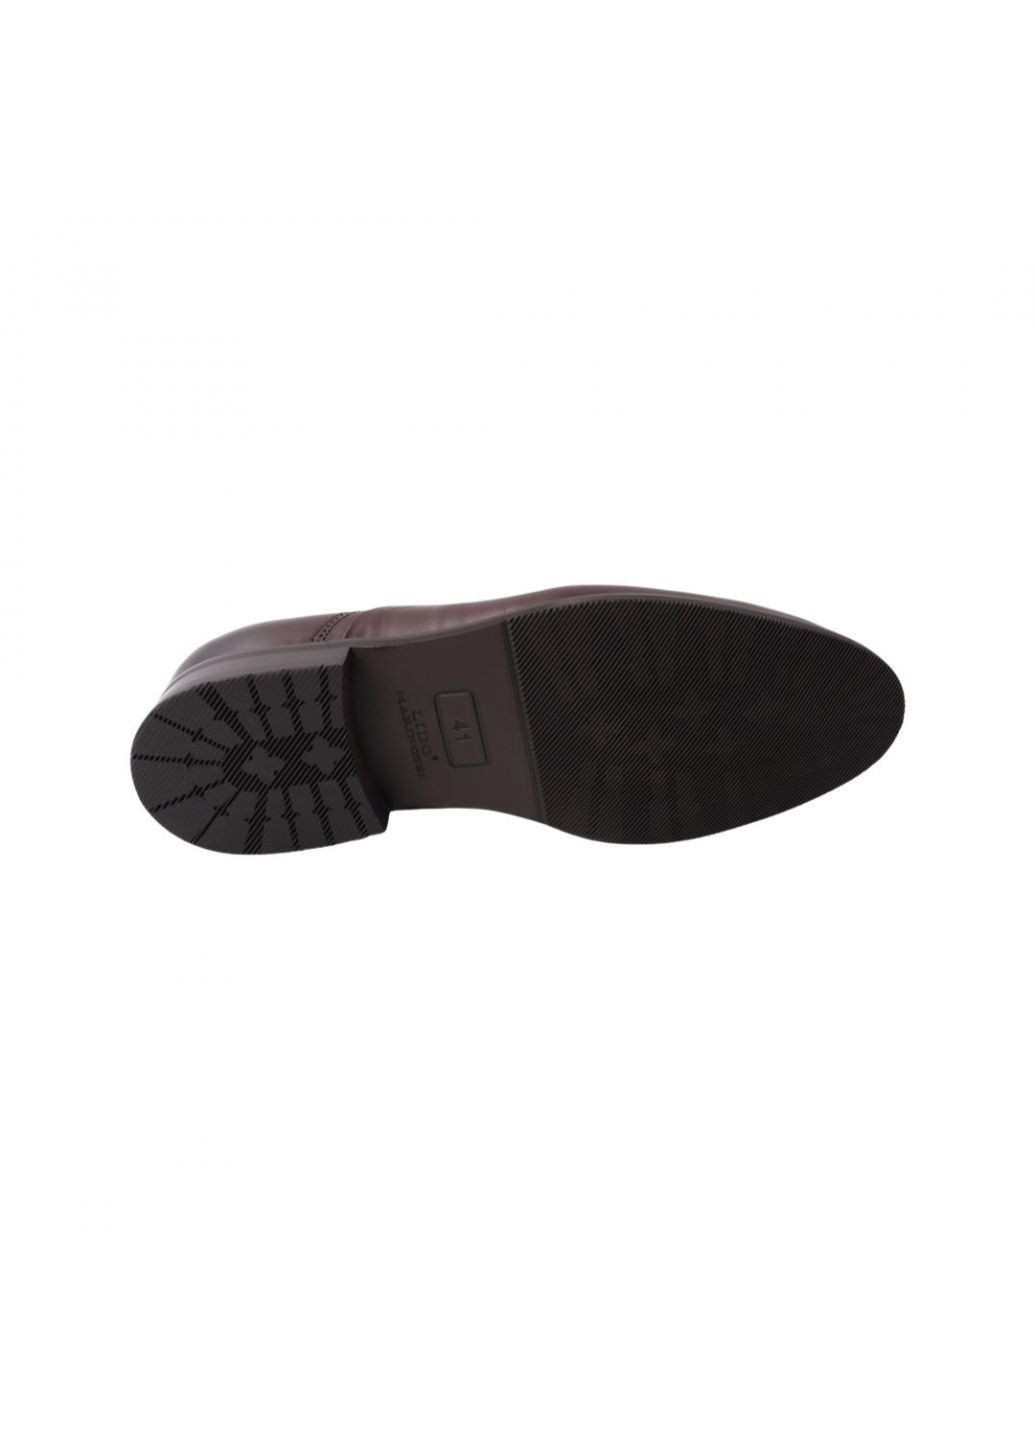 Туфлі чоловічі Lido Marinozi коричневі натуральна шкіра Lido Marinozzi 236-21dt (257439643)